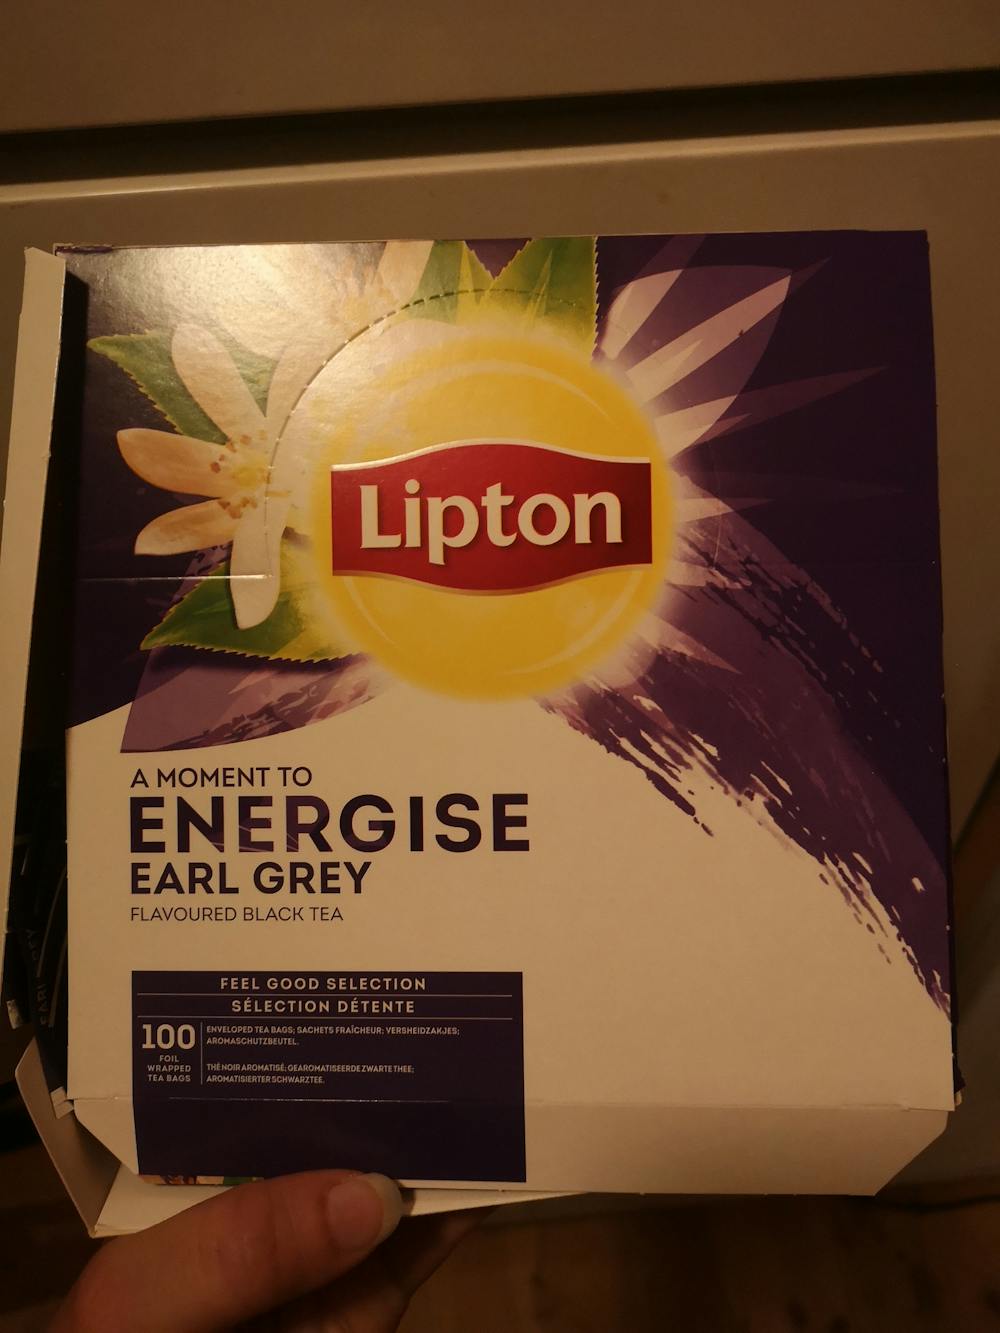 Energise earl grey, Lipton